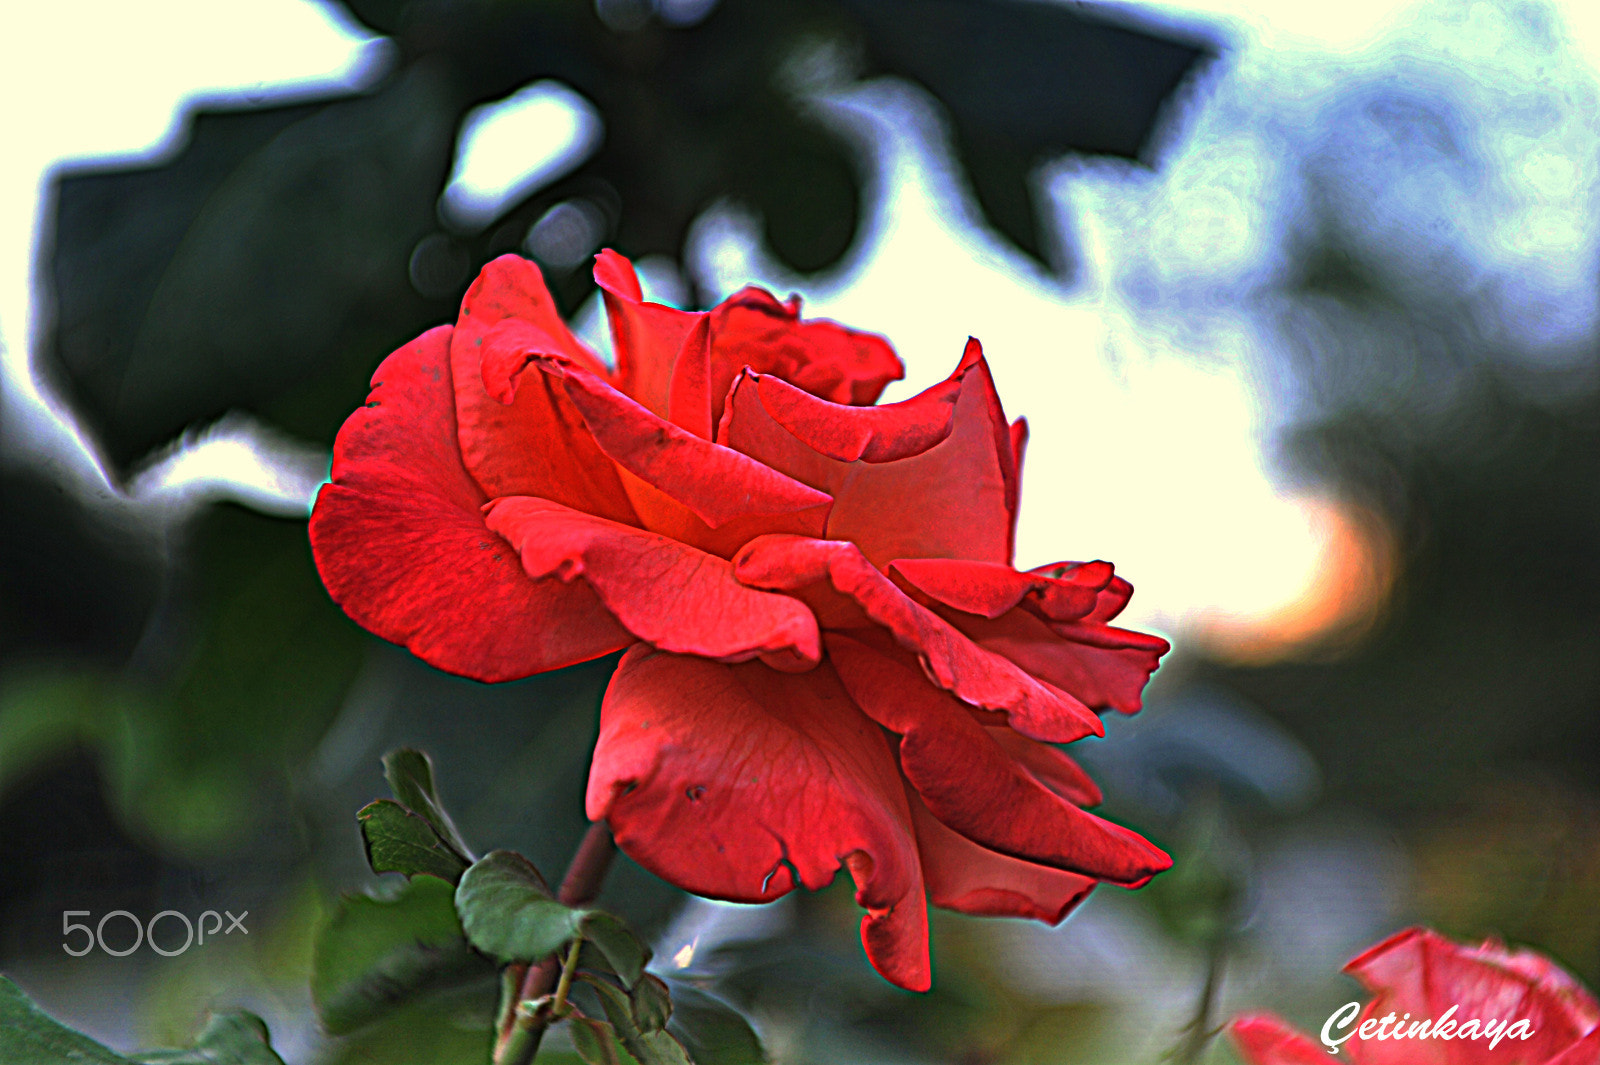 Nikon D3 + Tokina AT-X 280 AF PRO (AF 28-80mm f/2.8) sample photo. Red rose photography